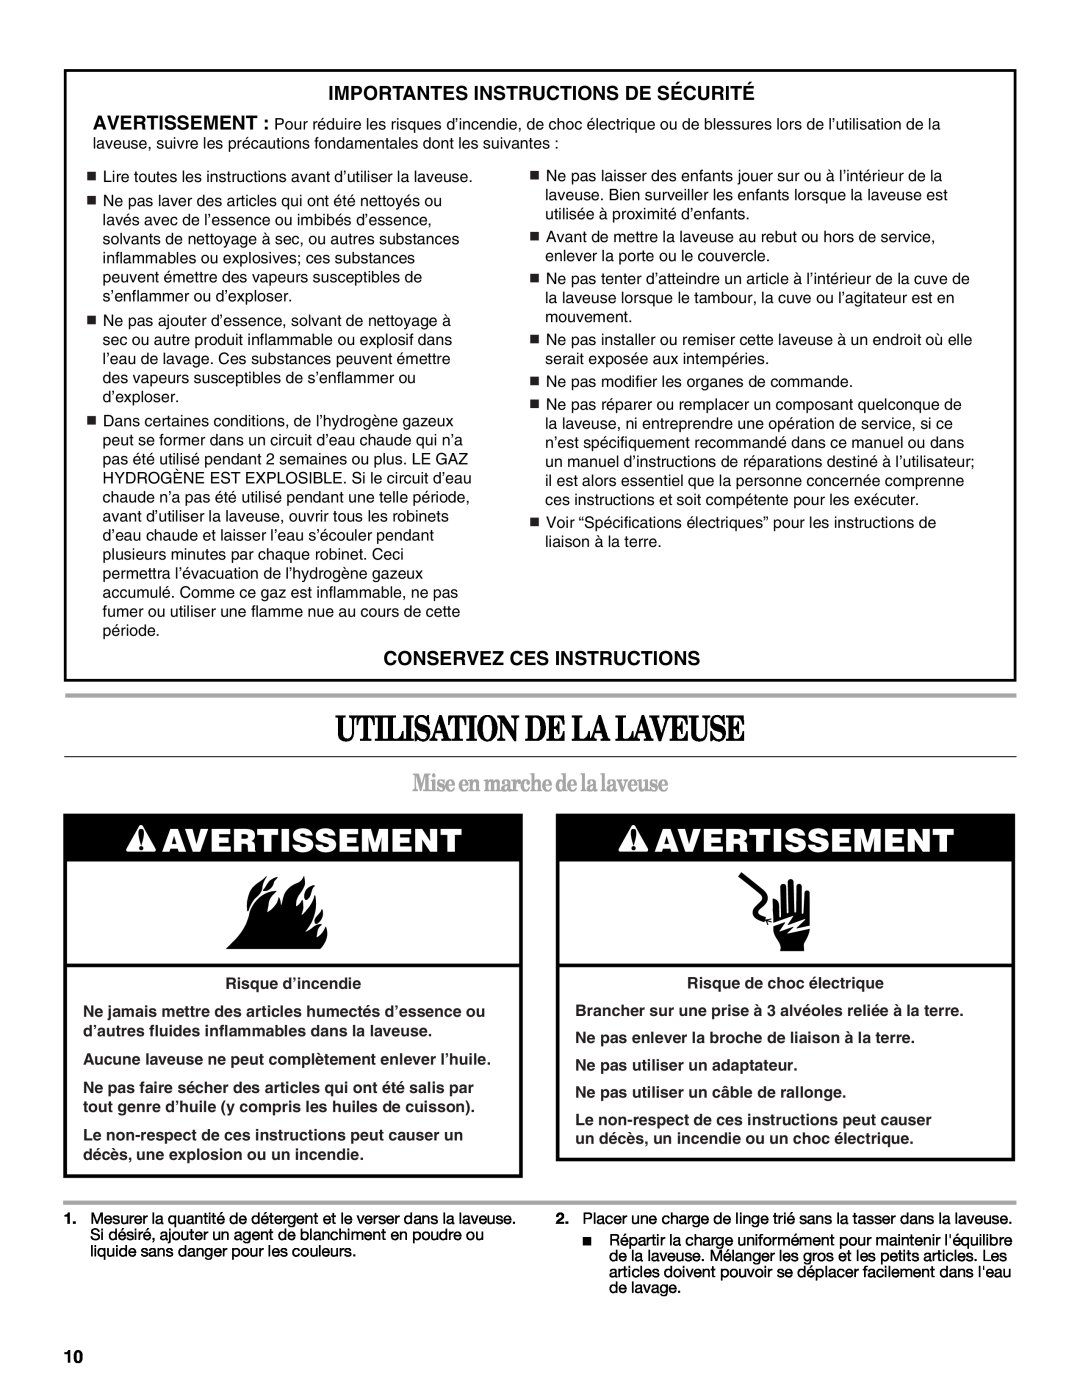 Whirlpool W10150595A warranty Utilisation De La Laveuse, Avertissement, Miseenmarchedelalaveuse, Conservez Ces Instructions 